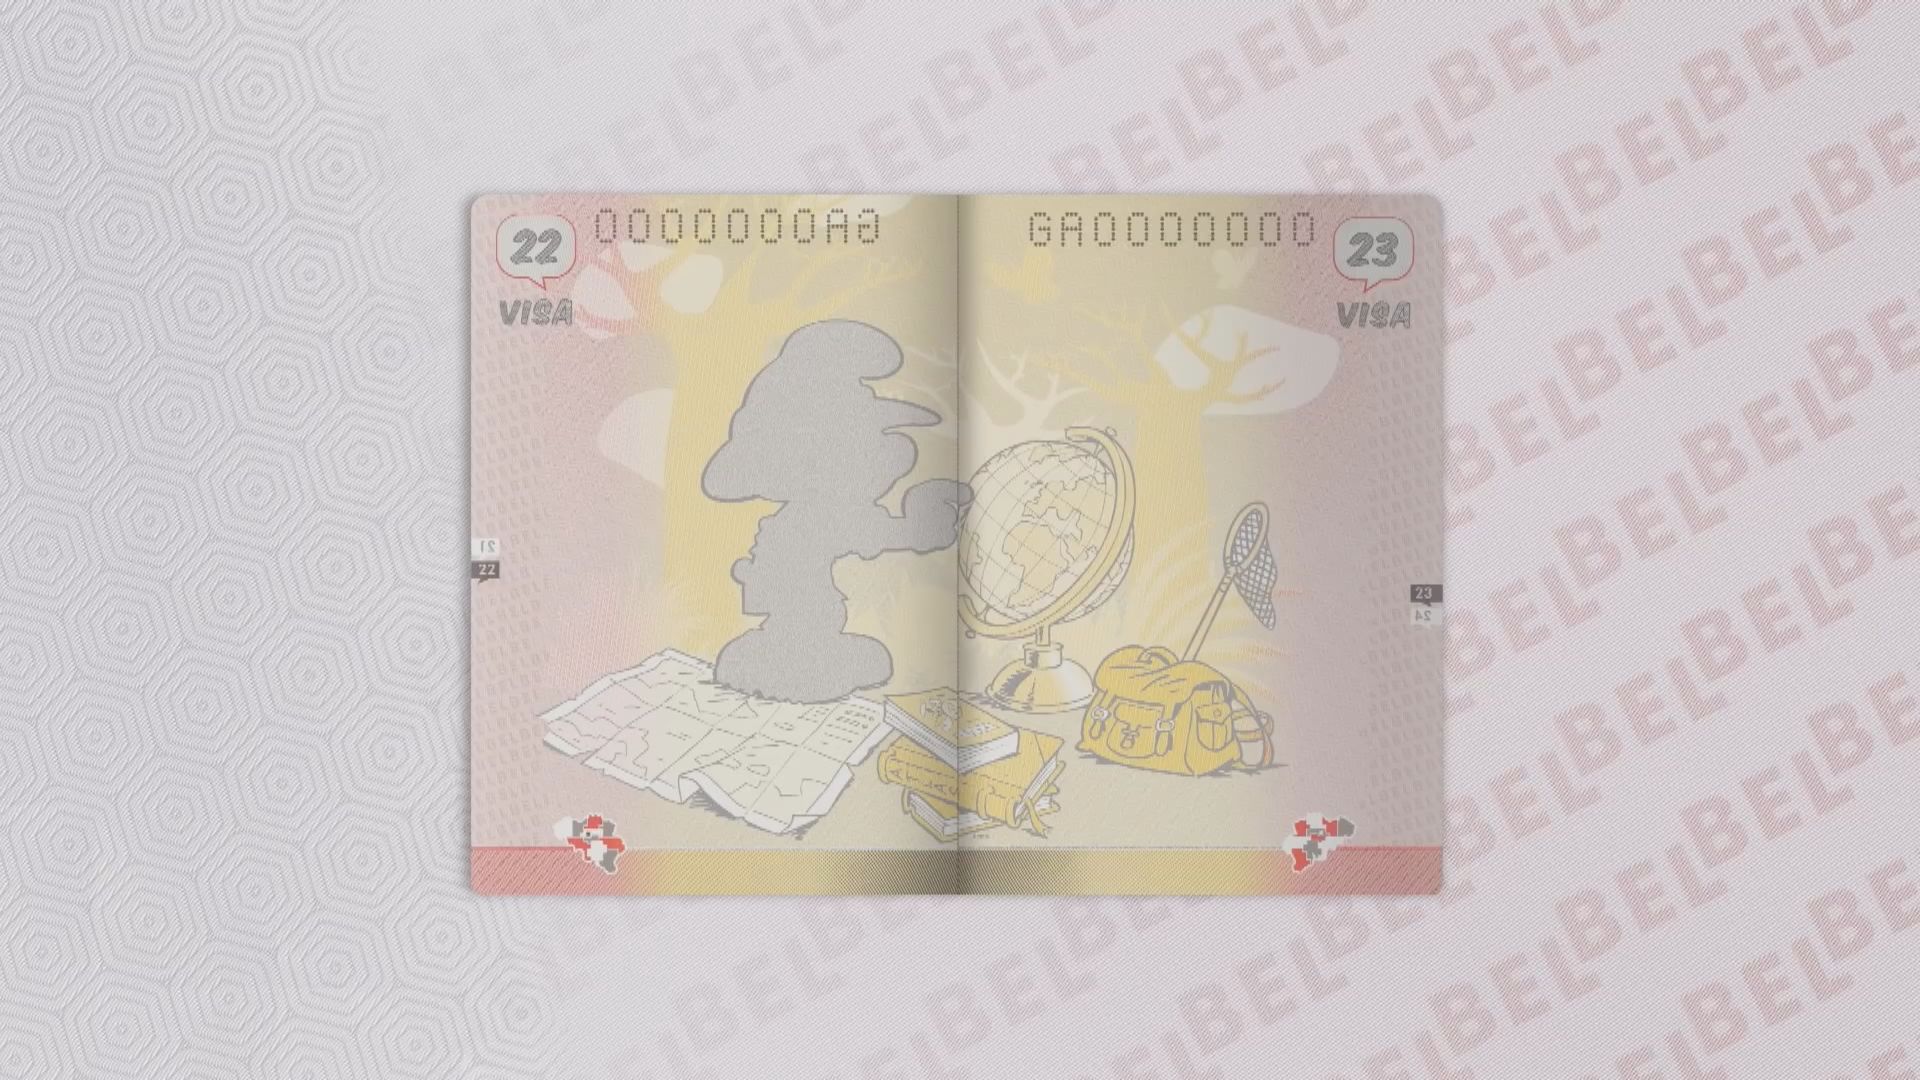 比利時新版護照印有藍精靈等漫畫人物